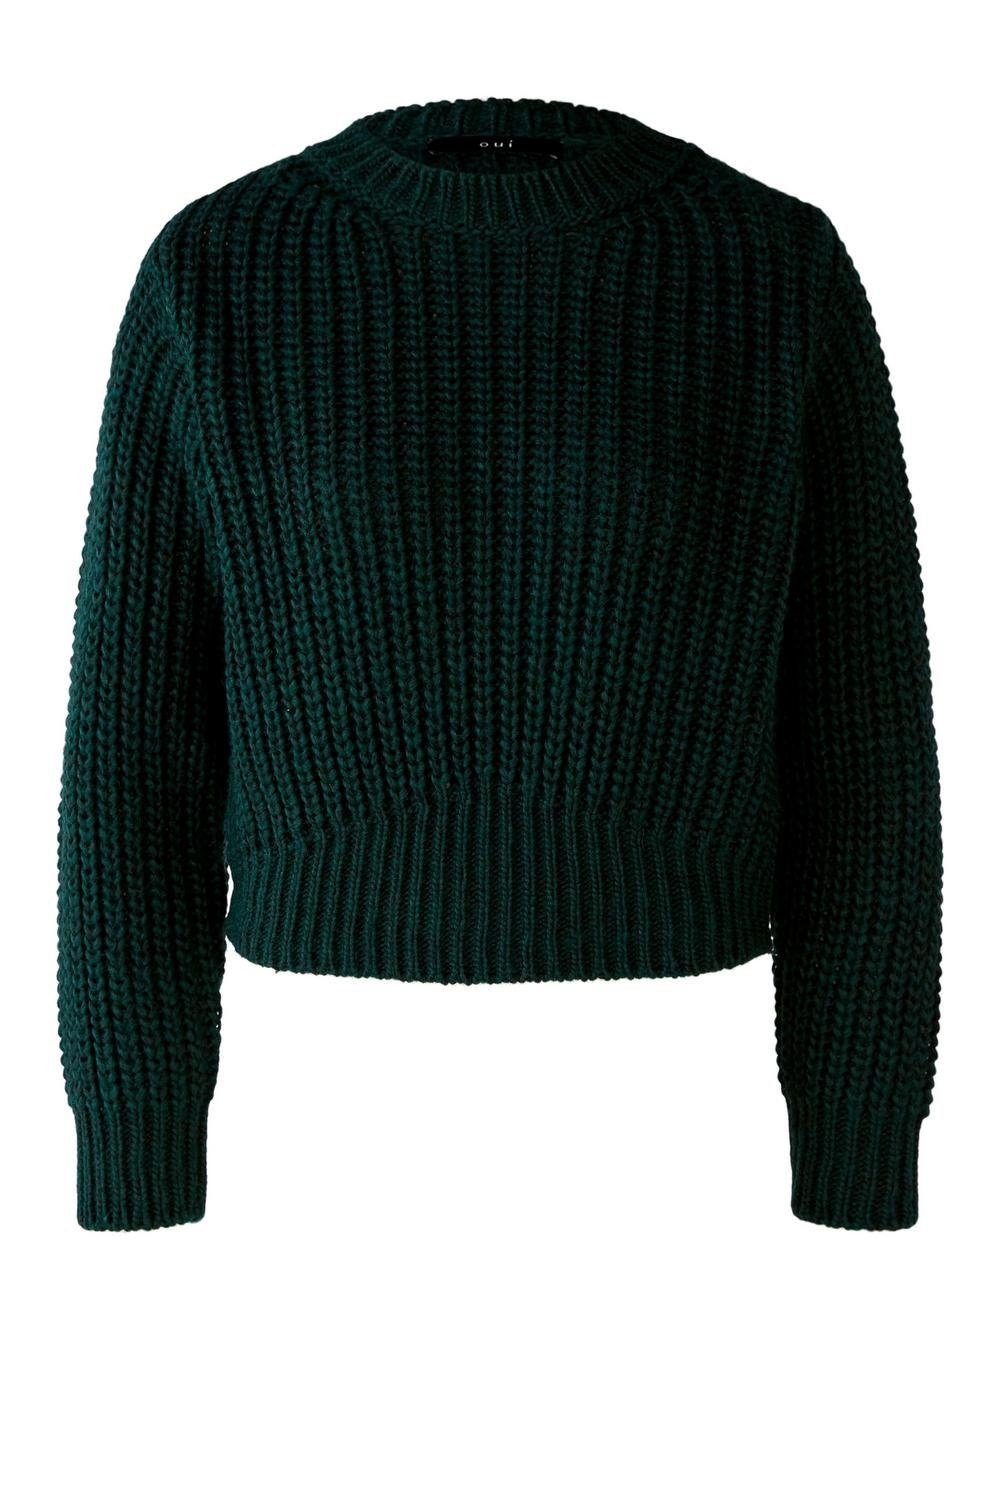 Oui Sweatshirt Pullover, darkgreen